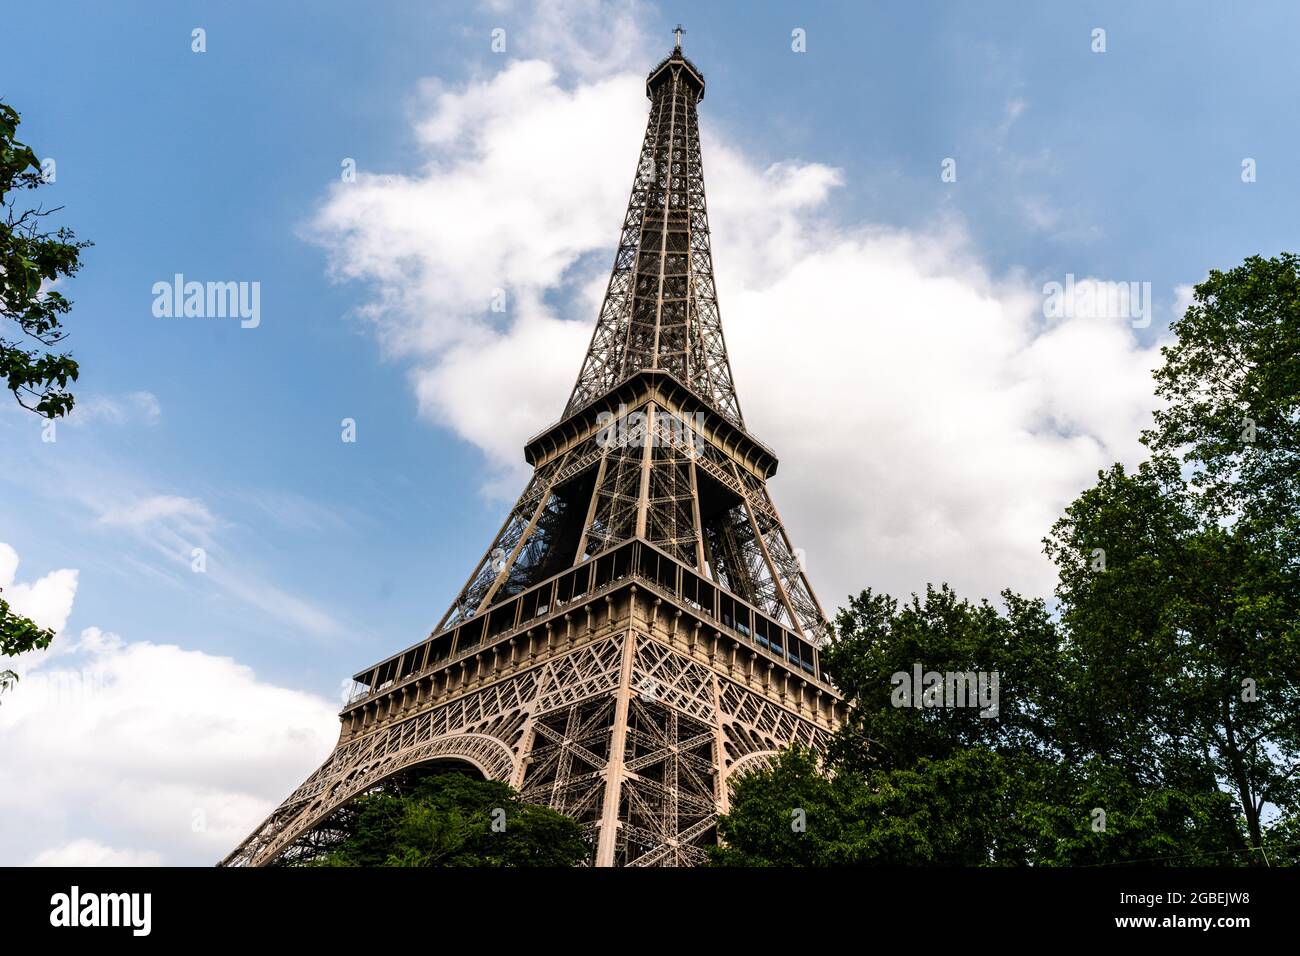 La Tour Eiffel, un monument parisien qui est aussi un chef-d'œuvre technologique dans l'histoire de la construction. Banque D'Images